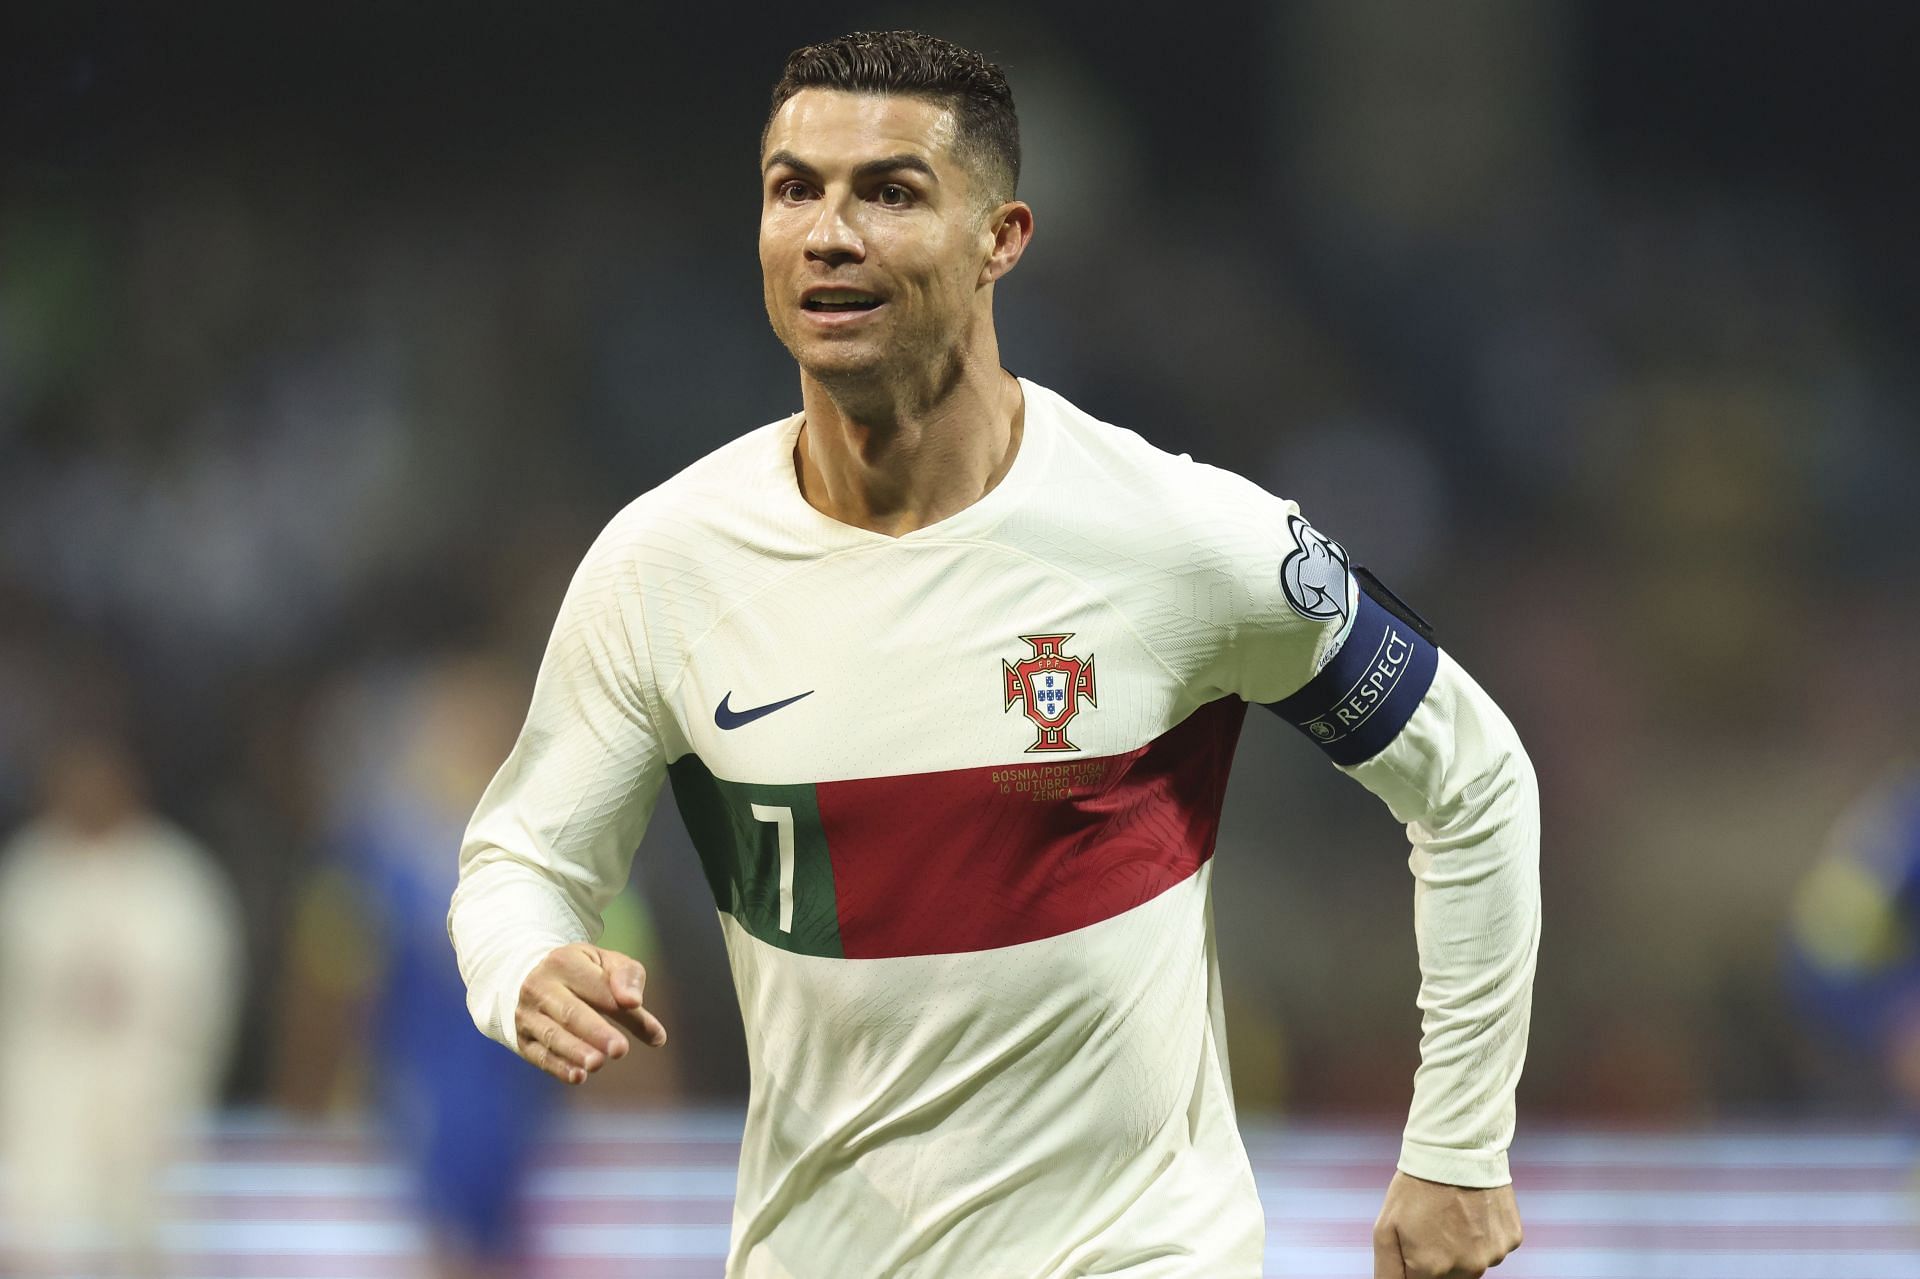 Cristiano Ronaldo in action for Portugal